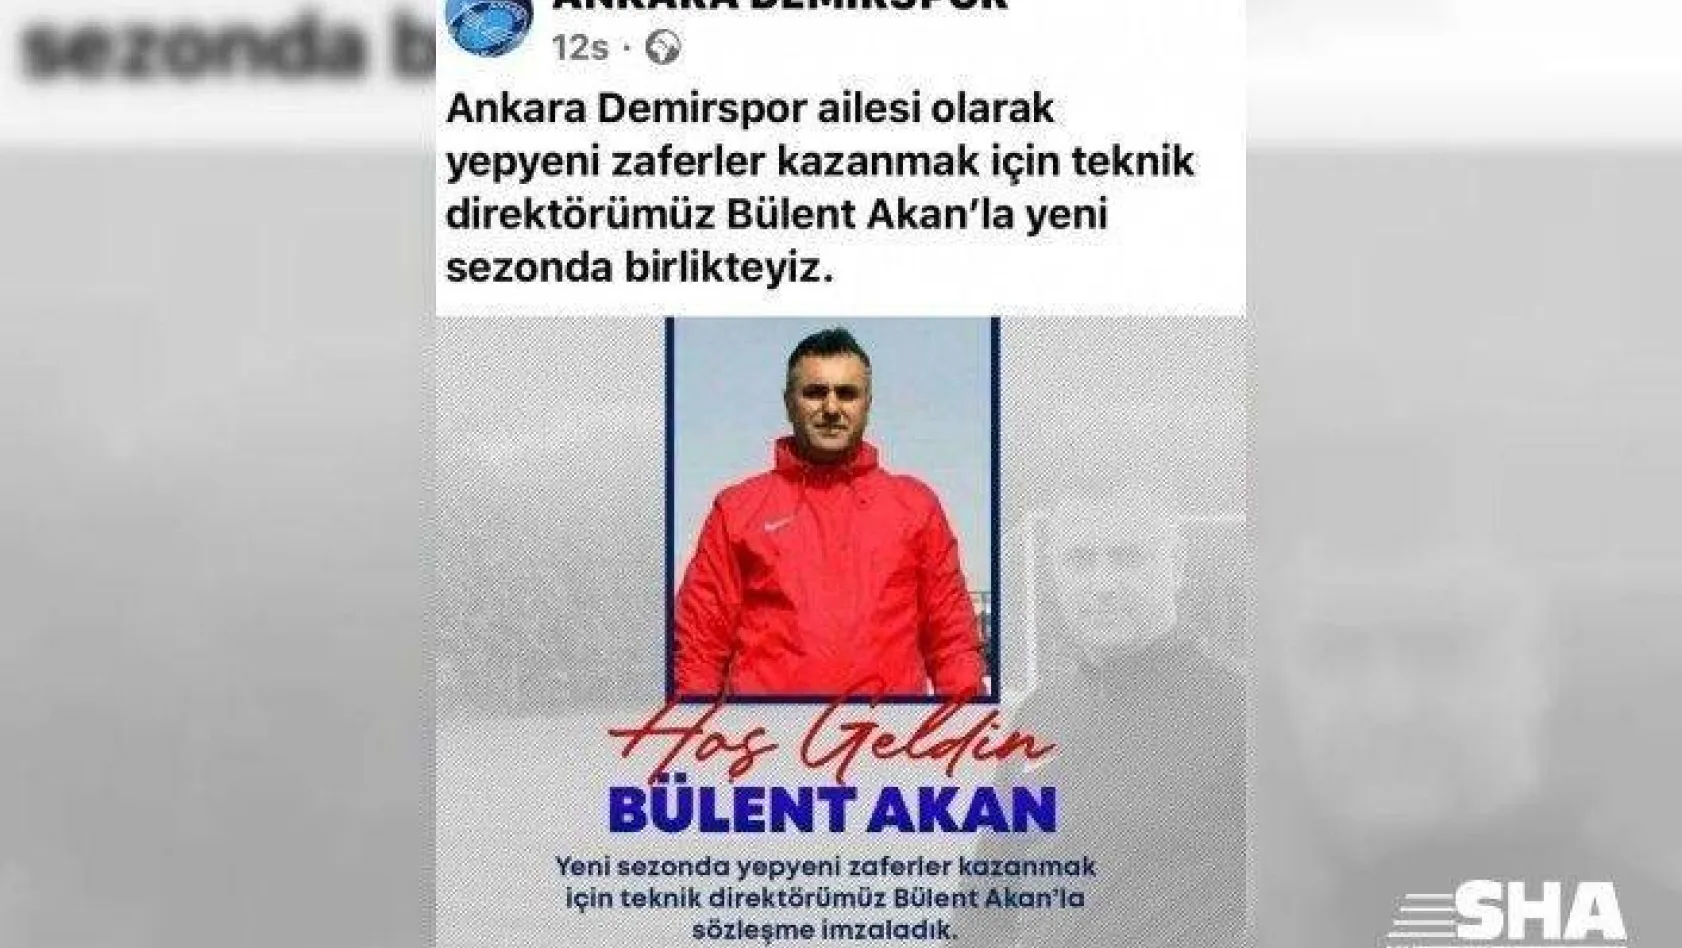 Ankara Demirspor'da Bülent Akan dönemi